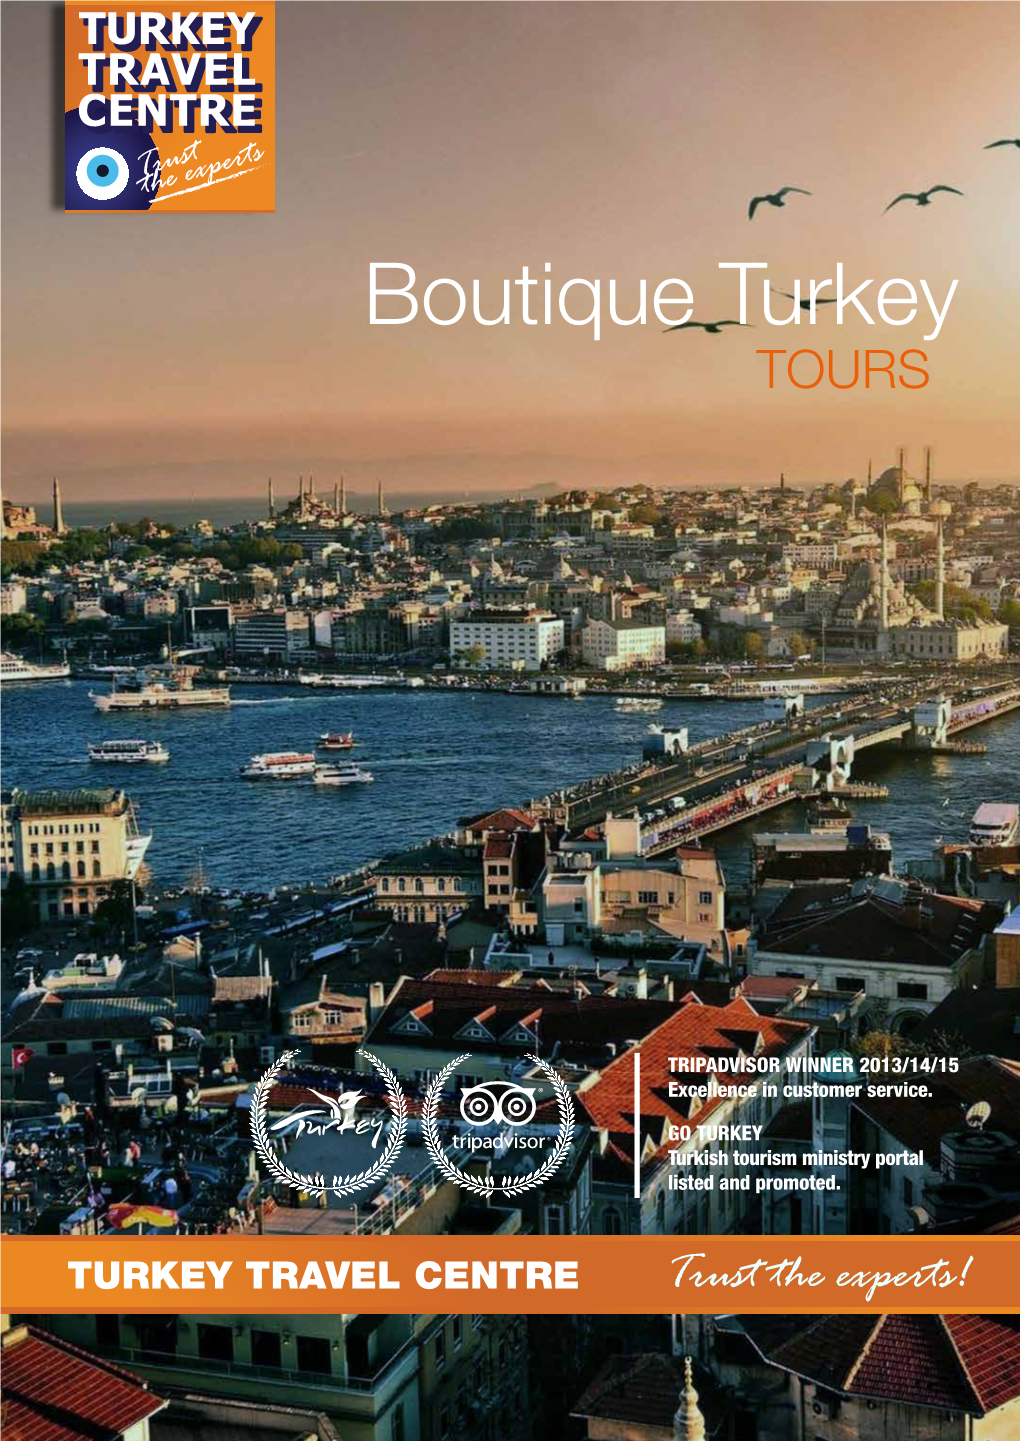 Boutique Turkey TOURS